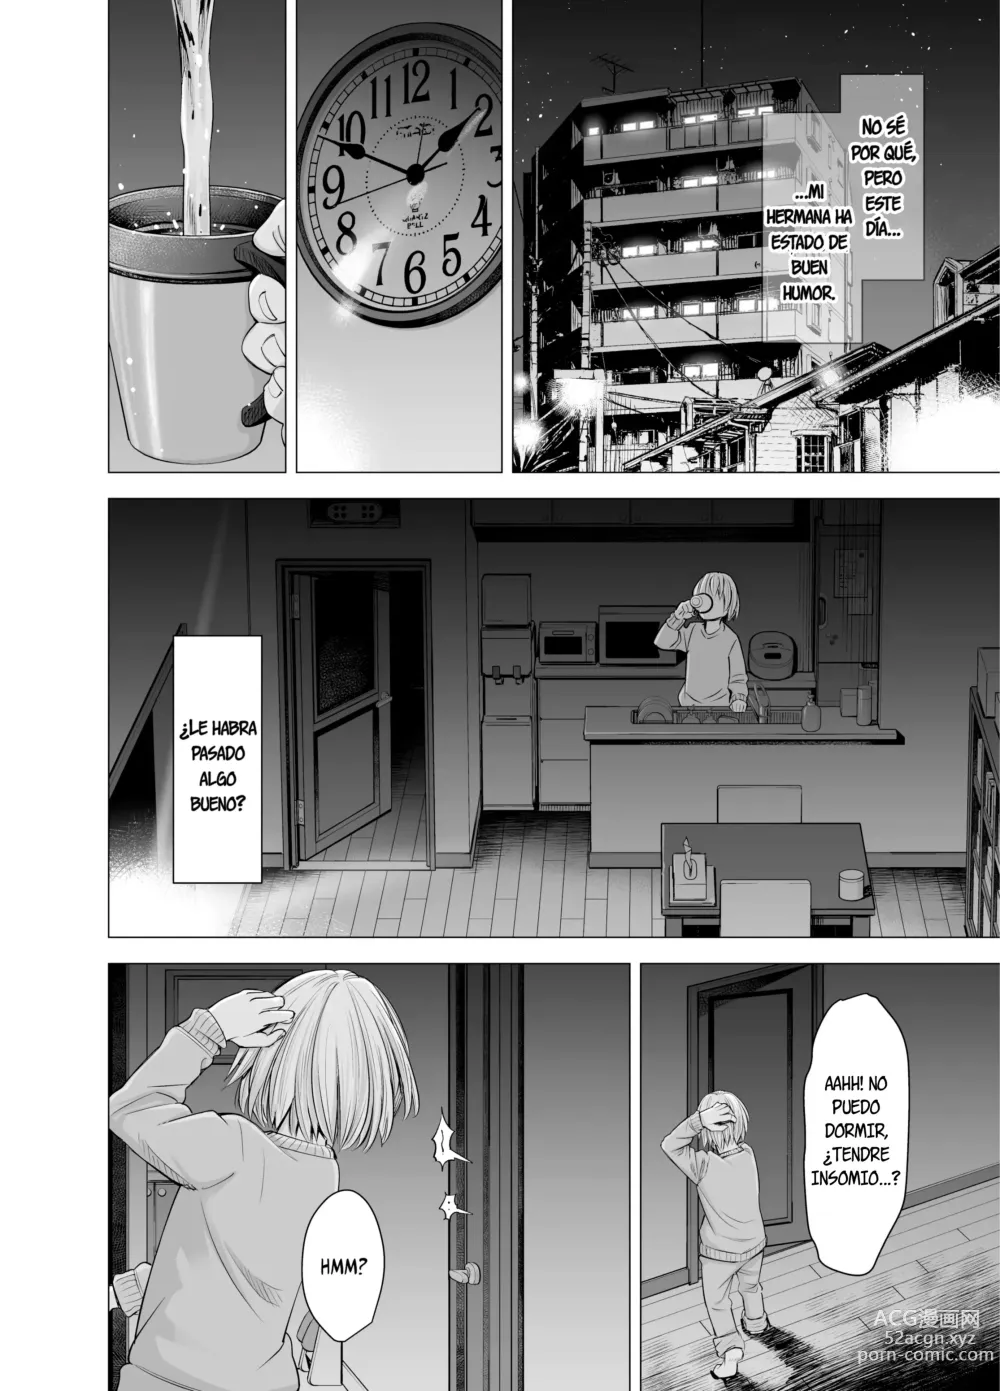 Page 8 of doujinshi Ya no puedo verla como mi hermana (decensored)